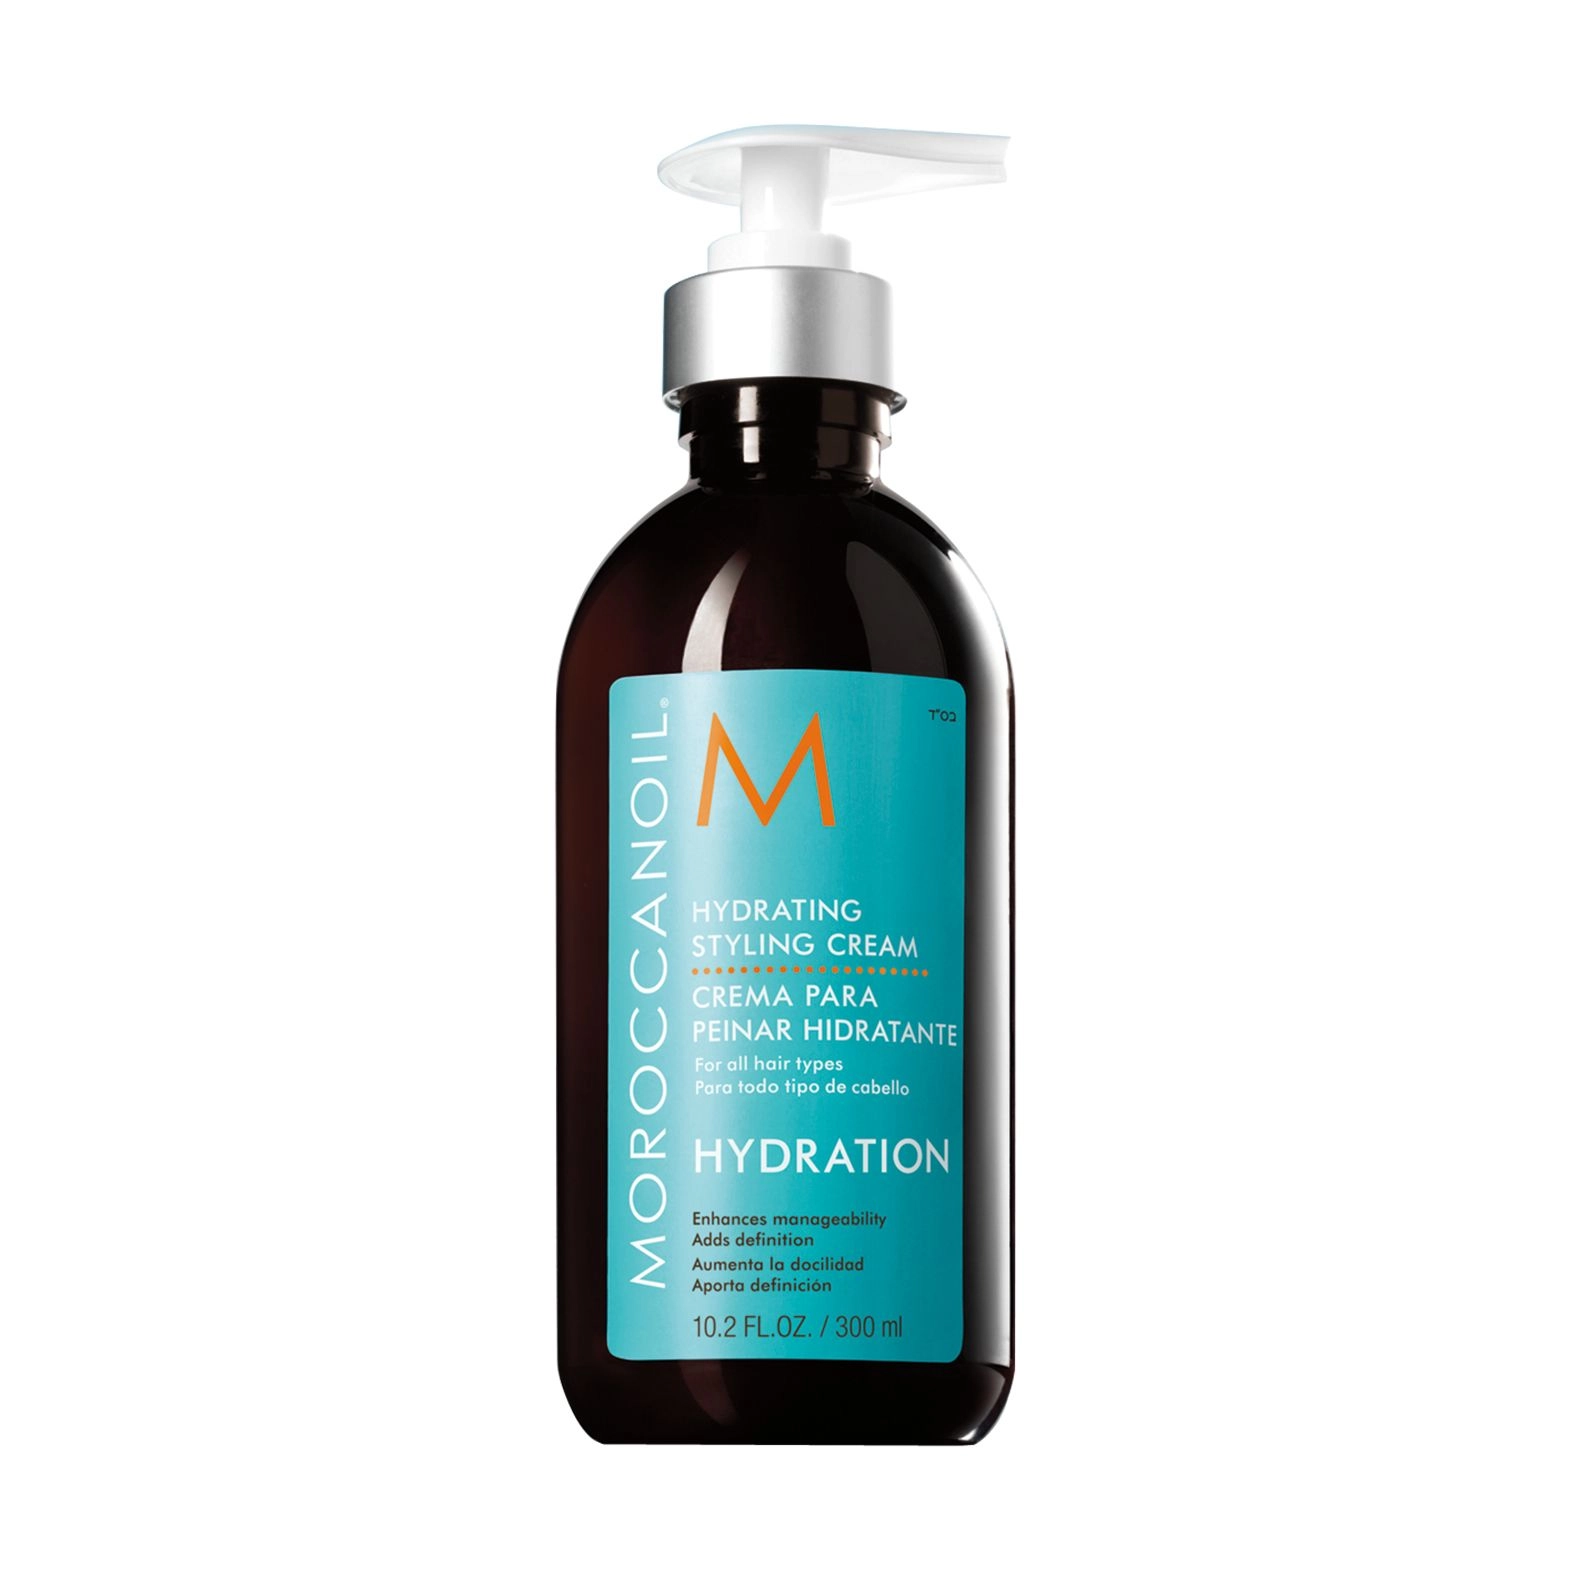 Увлажняющий крем для укладки волос - Moroccanoil Hydrating Styling Cream, 300 мл - фото N1